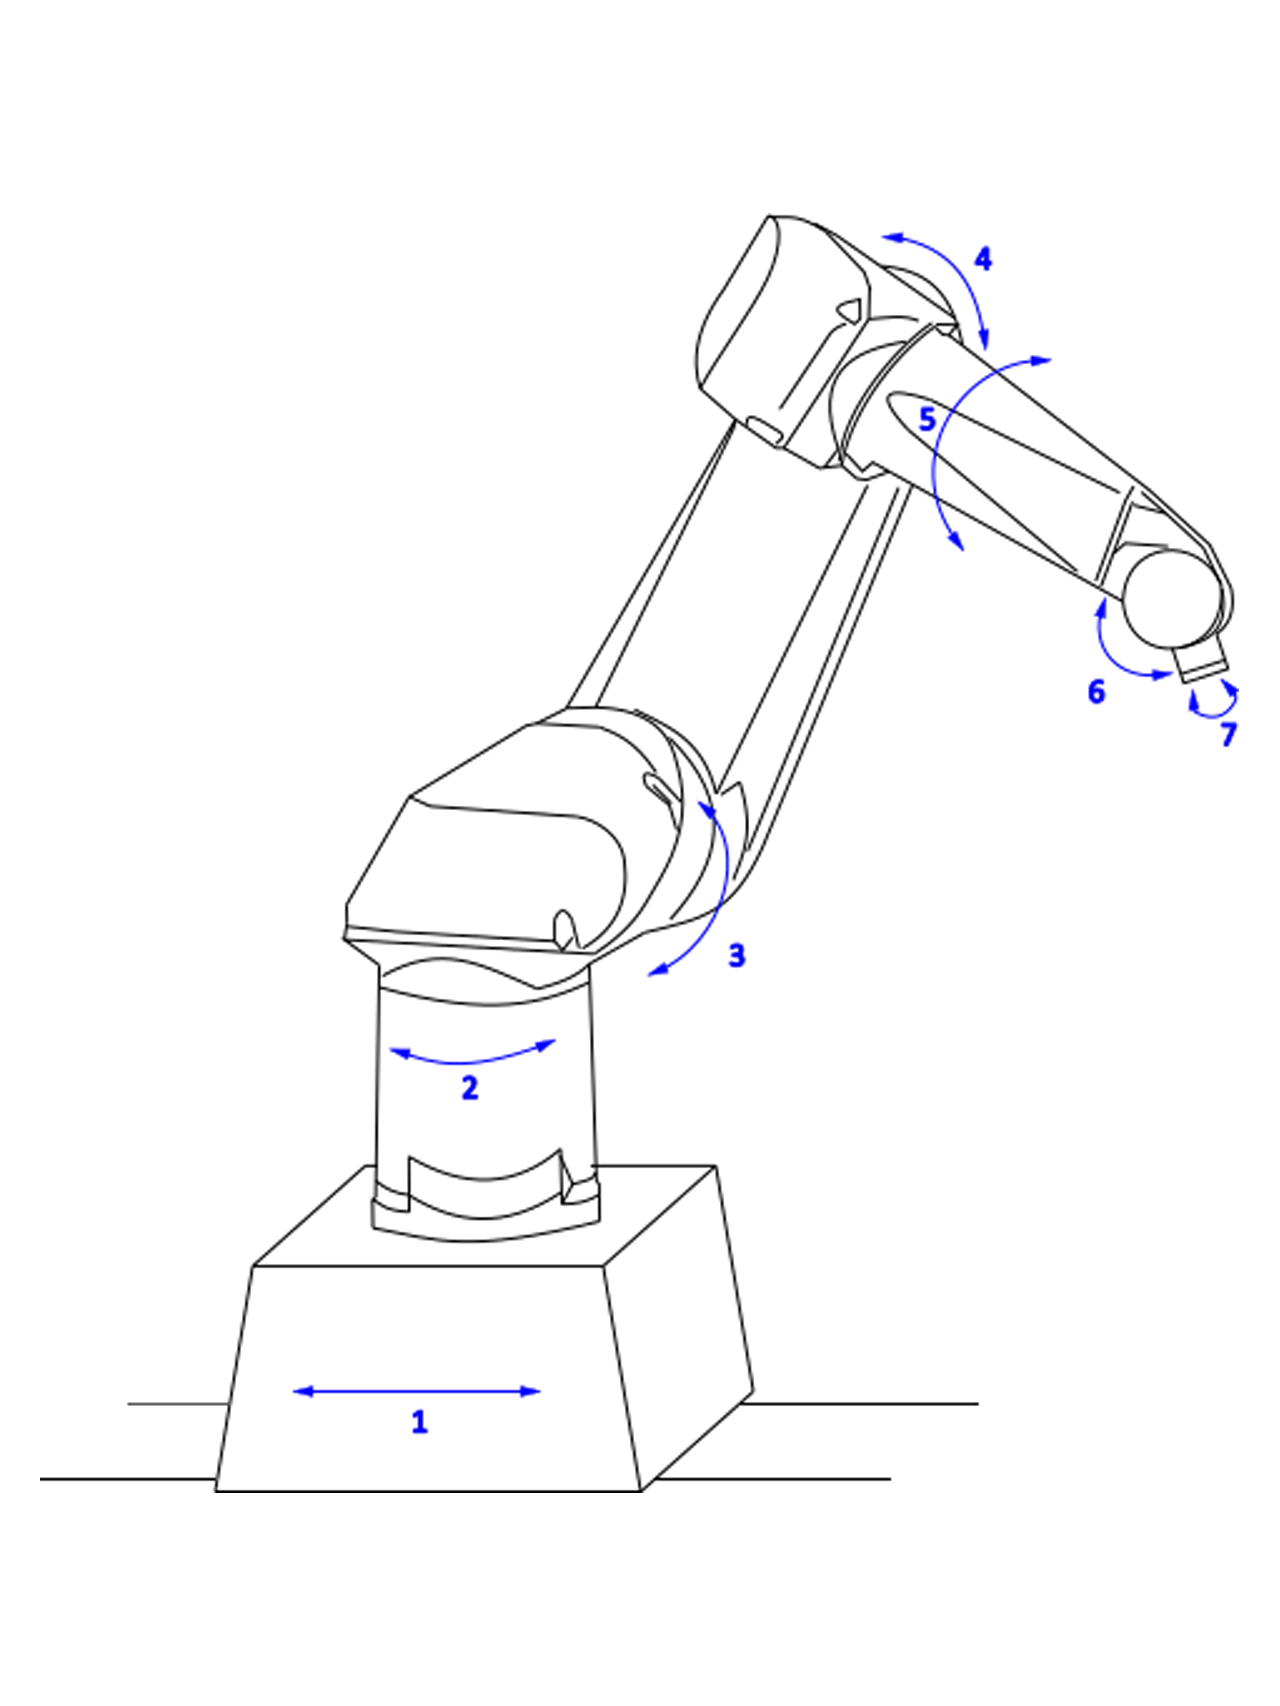 [Bild 1]: Schematische Darstellung Industrieroboter auf Verfahrschiene